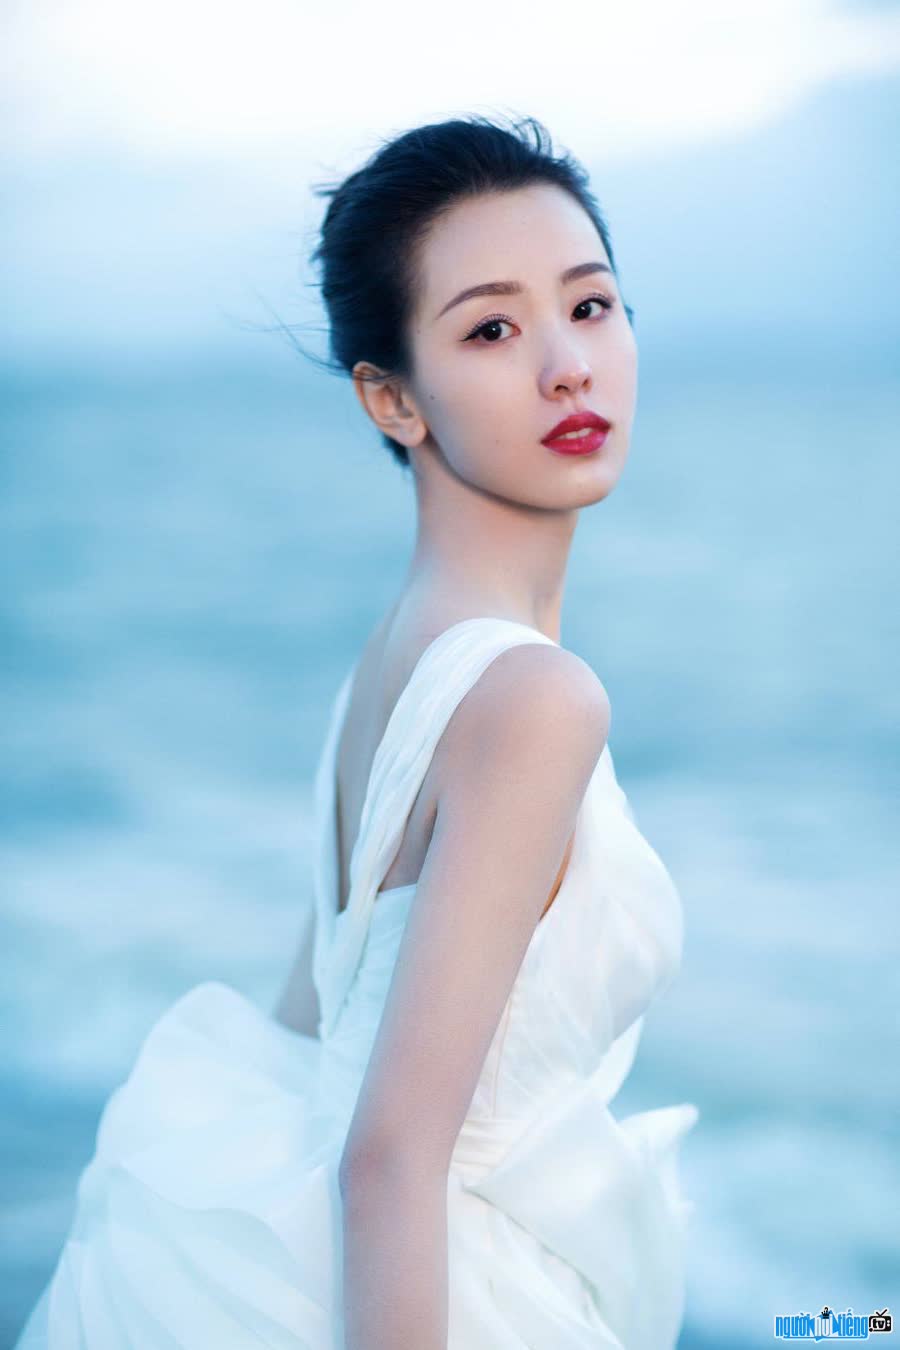 Cận cảnh nhan sắc xinh đẹp của diễn viên Trần Đô Linh